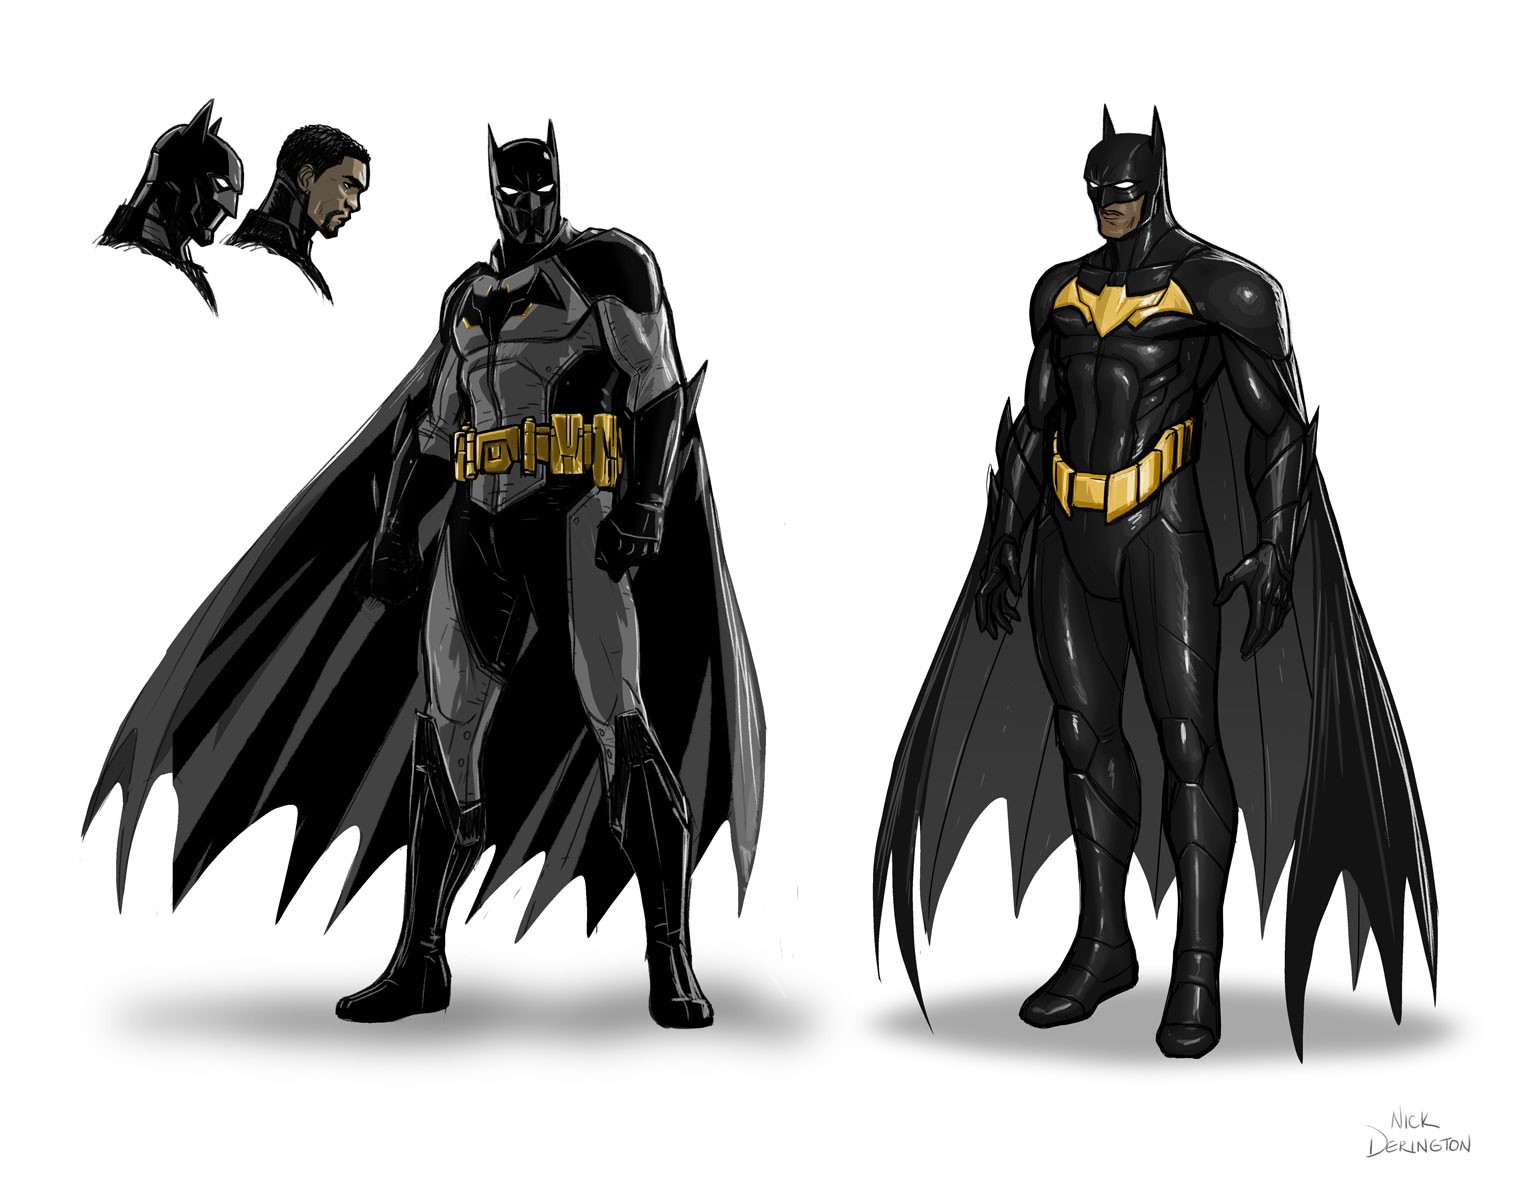 DC大事件后的新一代蝙蝠侠蒂姆·福克斯服装设计展示